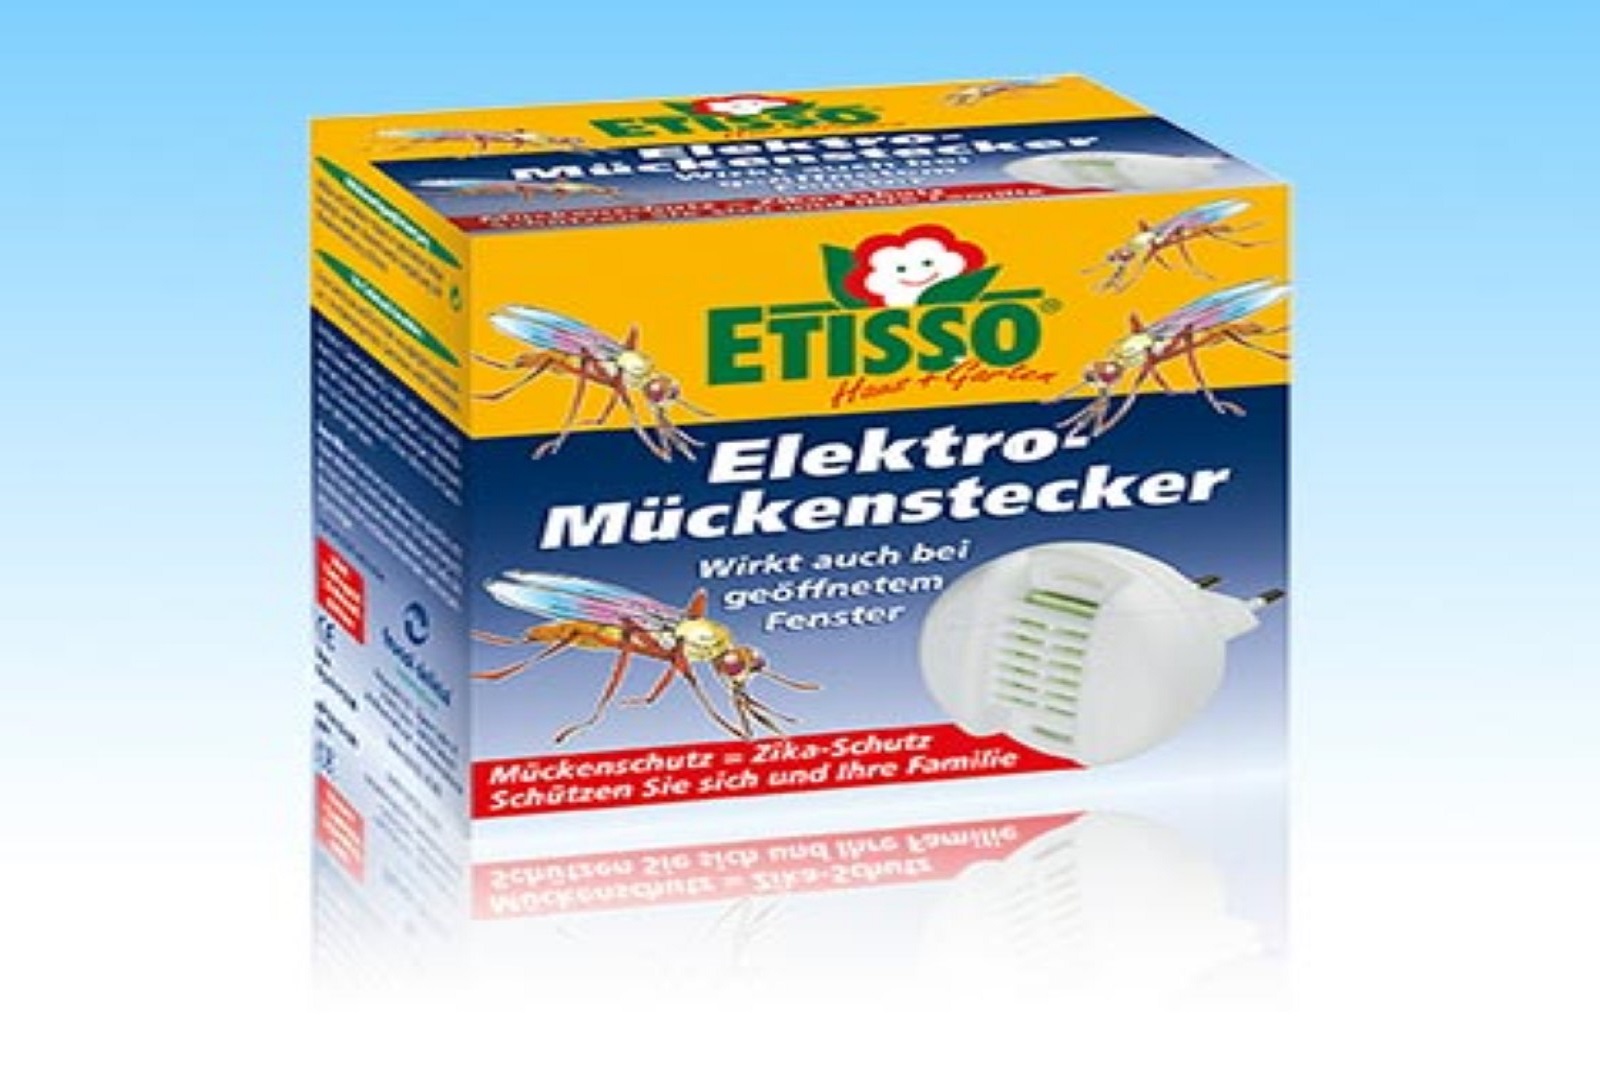 Etisso Elektro Mückenstecker 1St. + 3 x 20 Plättchen